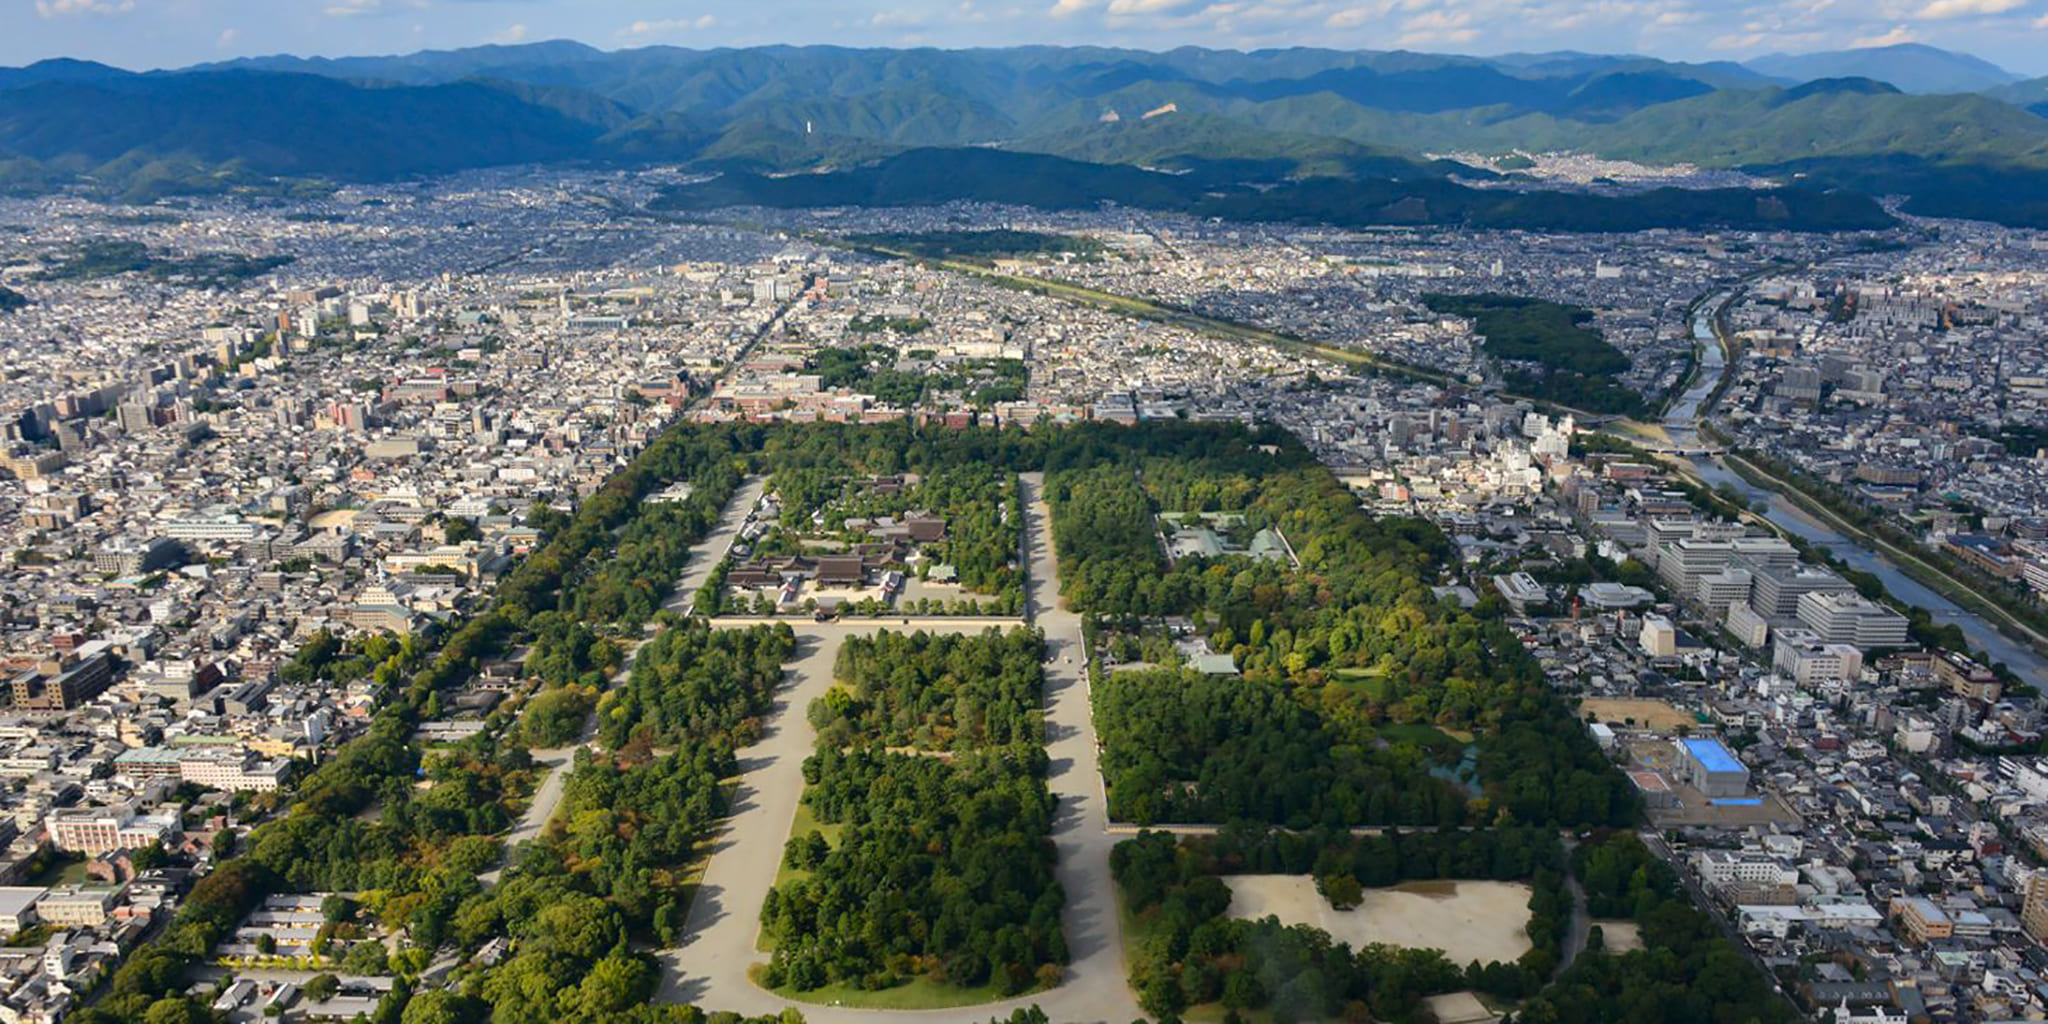 ヘリコプターで京都市内上空から見た御所